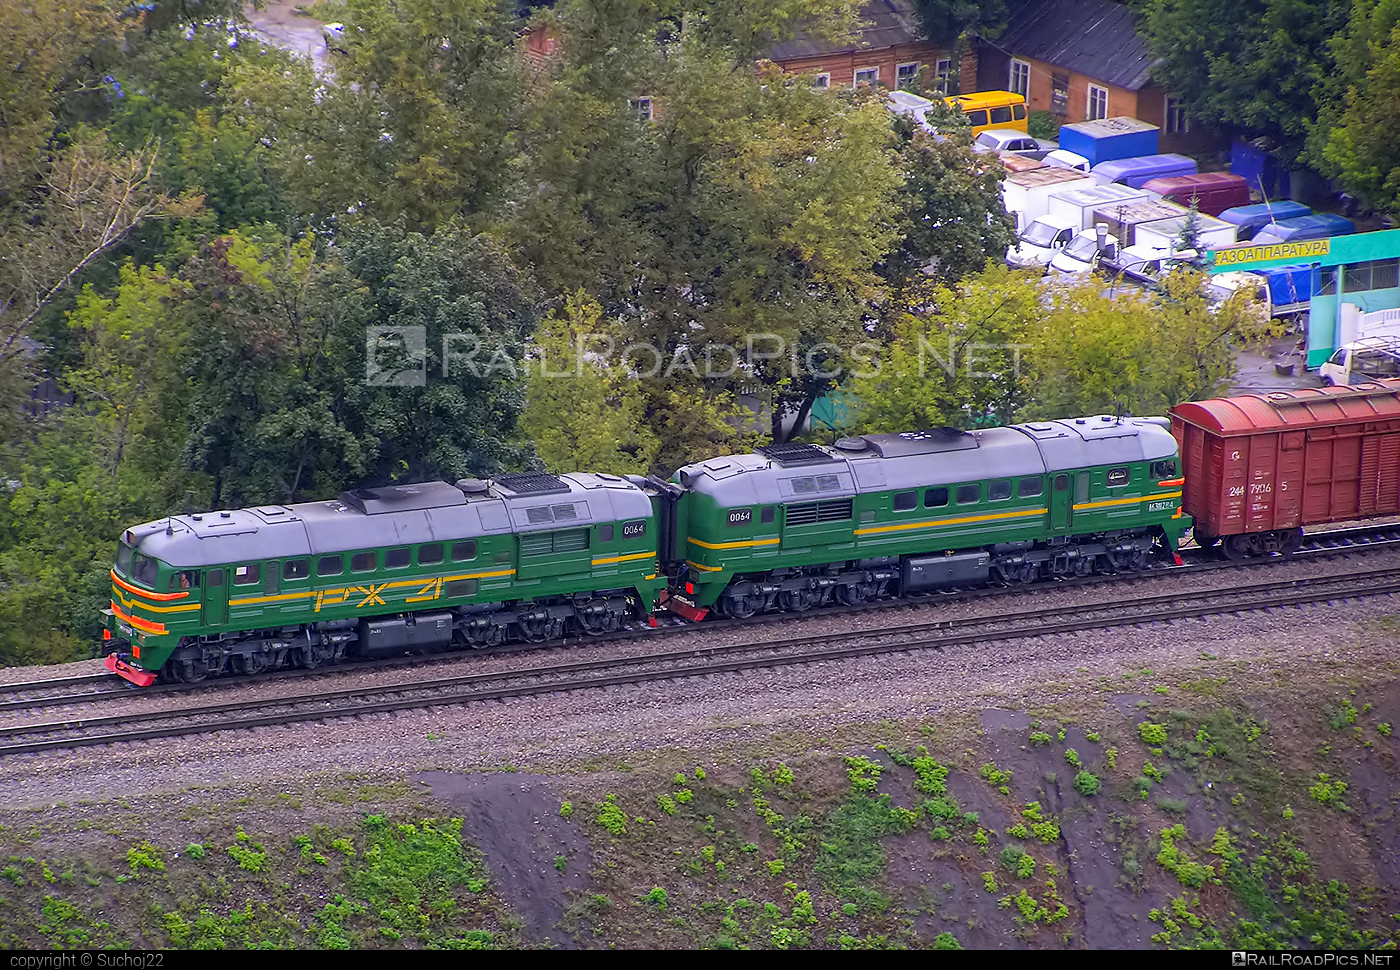 Lugansk 2M62U - 2М62У-0064 operated by Russkiye Zheleznye Dorogi #2m62 #2m62locomotive #2m62u #2m62ulocomotive #locomotive2m62 #locomotive2m62u #ltz #ltz2m62 #ltz2m62u #lugansk #lugansk2m62 #lugansk2m62u #luganskteplovoz #luhansklocomotiveworks #luhanskteplovoz